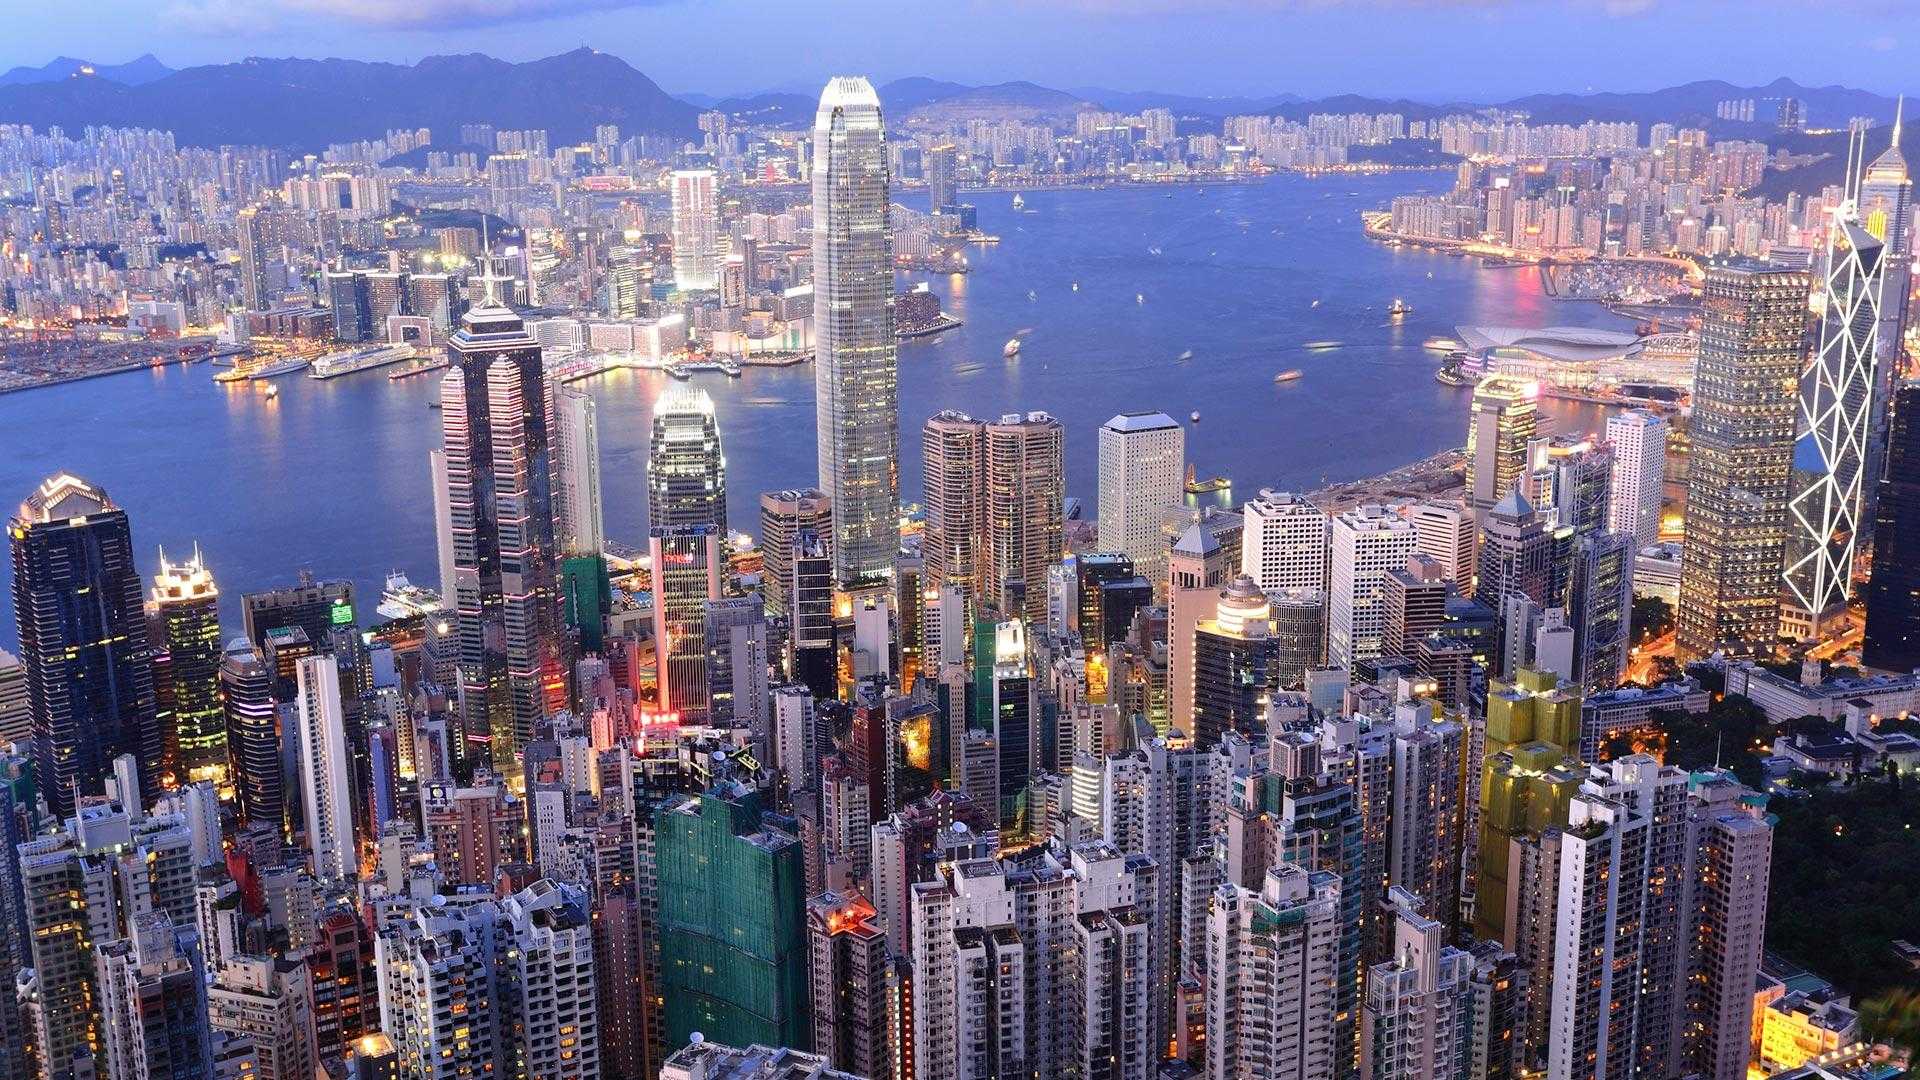 Ekonomik Dev Hong Kong'un Tarihçesi ve Yönetimi - Stratejik Ortak